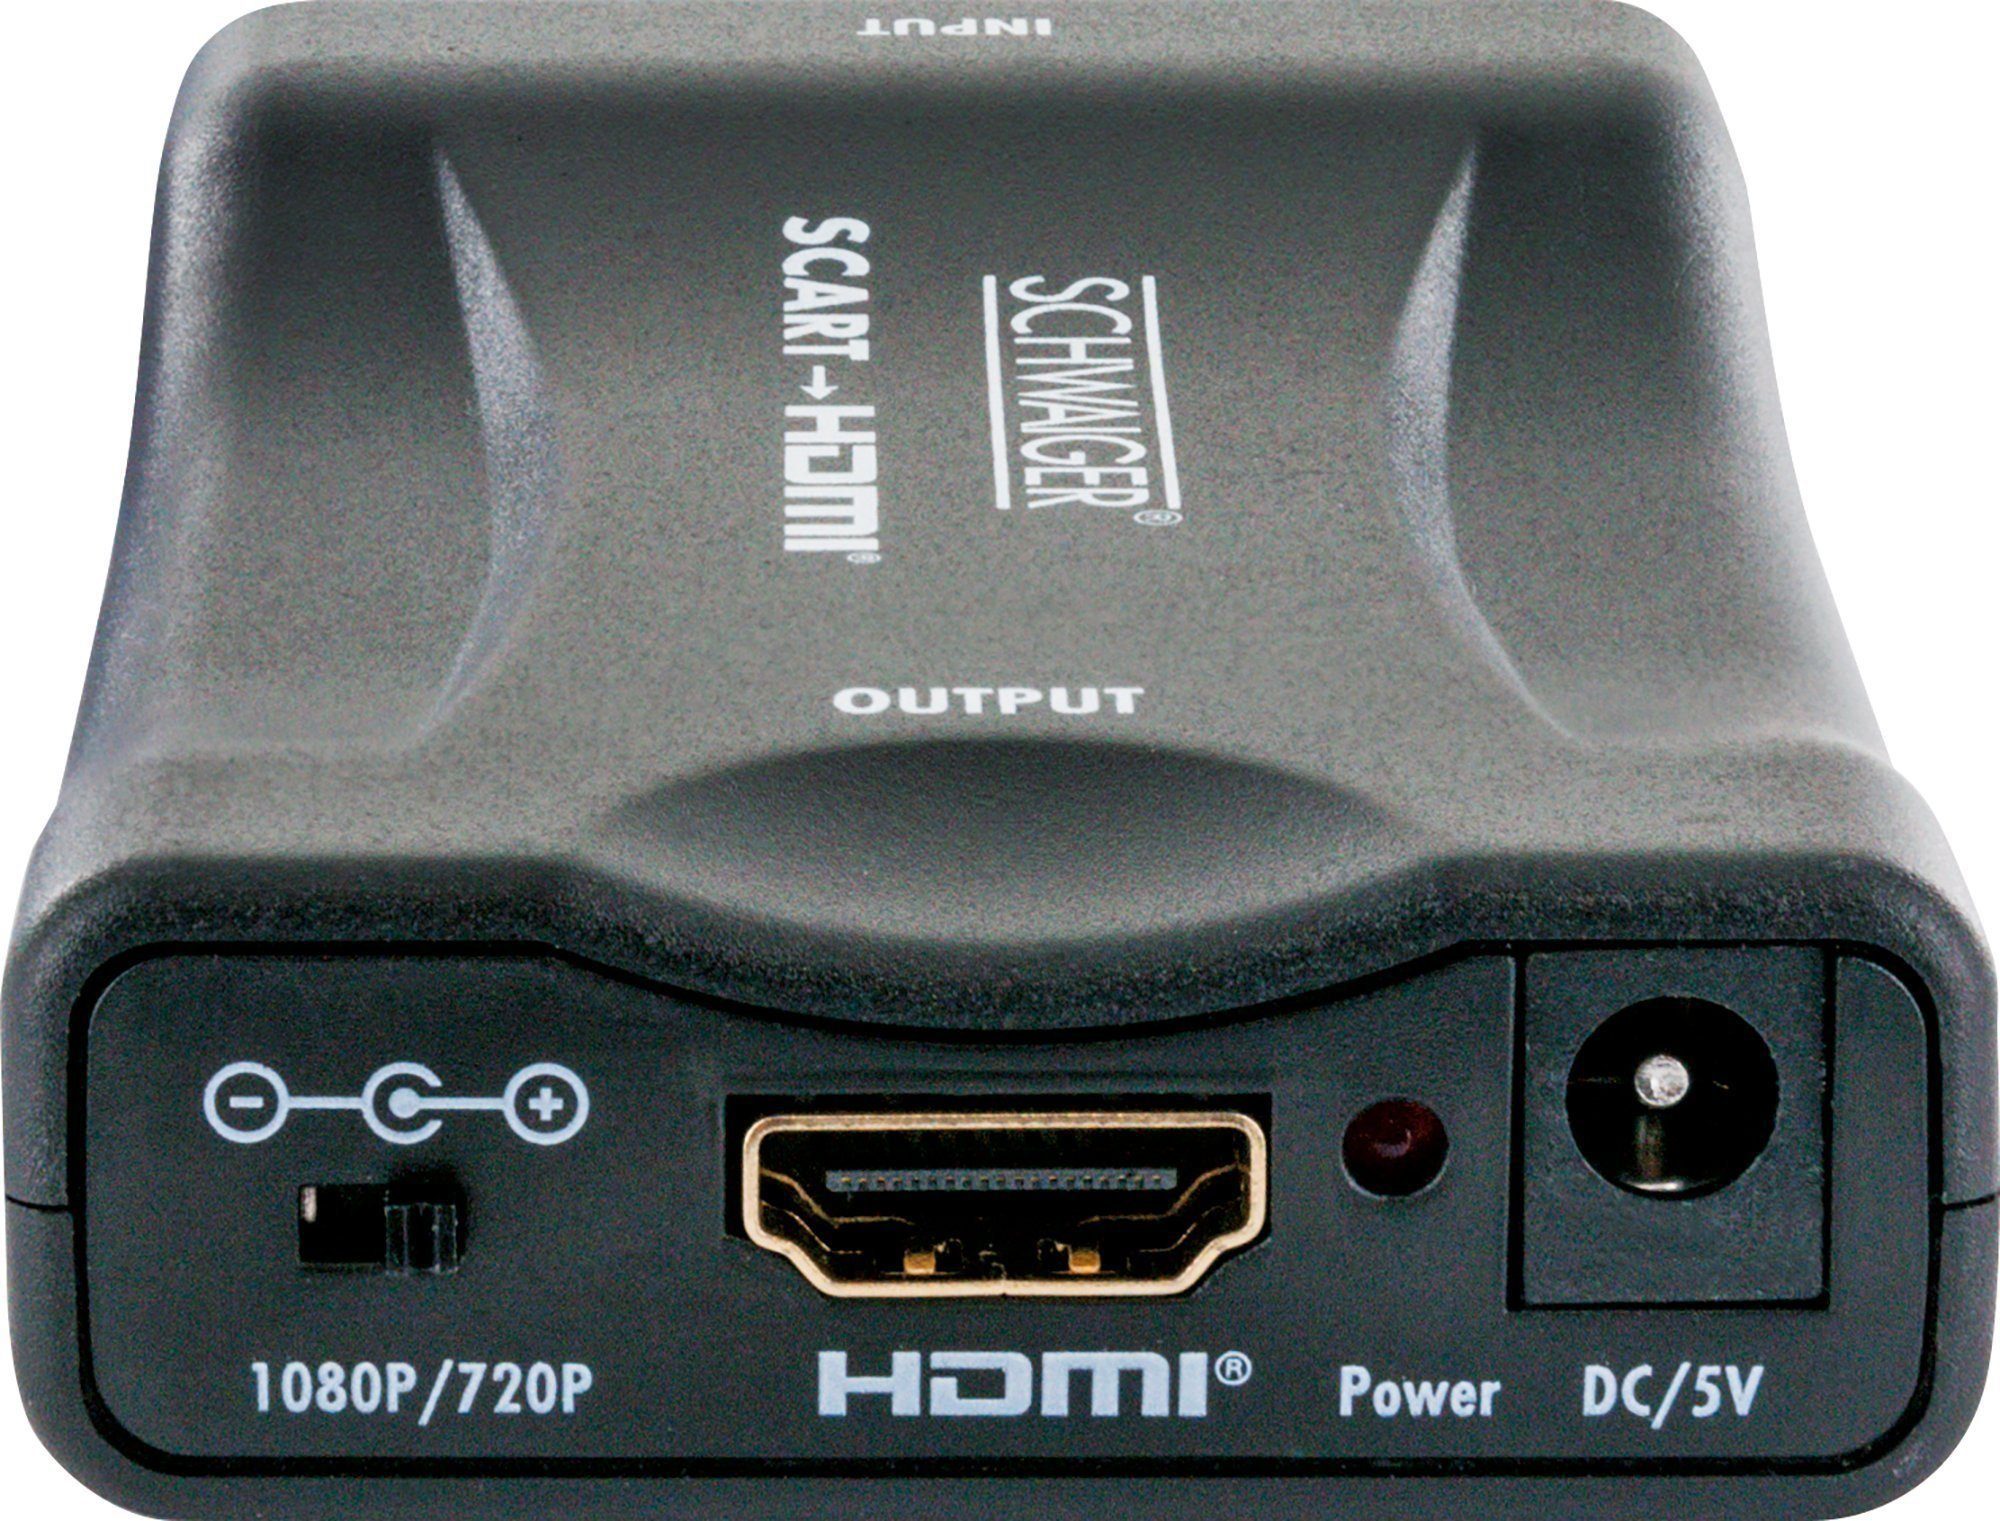 Schwaiger HDMSCA01 533 HDMI-Scart-Konverter Medienkonverter zu HDMI Buchse, Scart Buchse, Full HD tauglich, Unterstützt MHL, HDMI High Speed, abwärtskompatibel